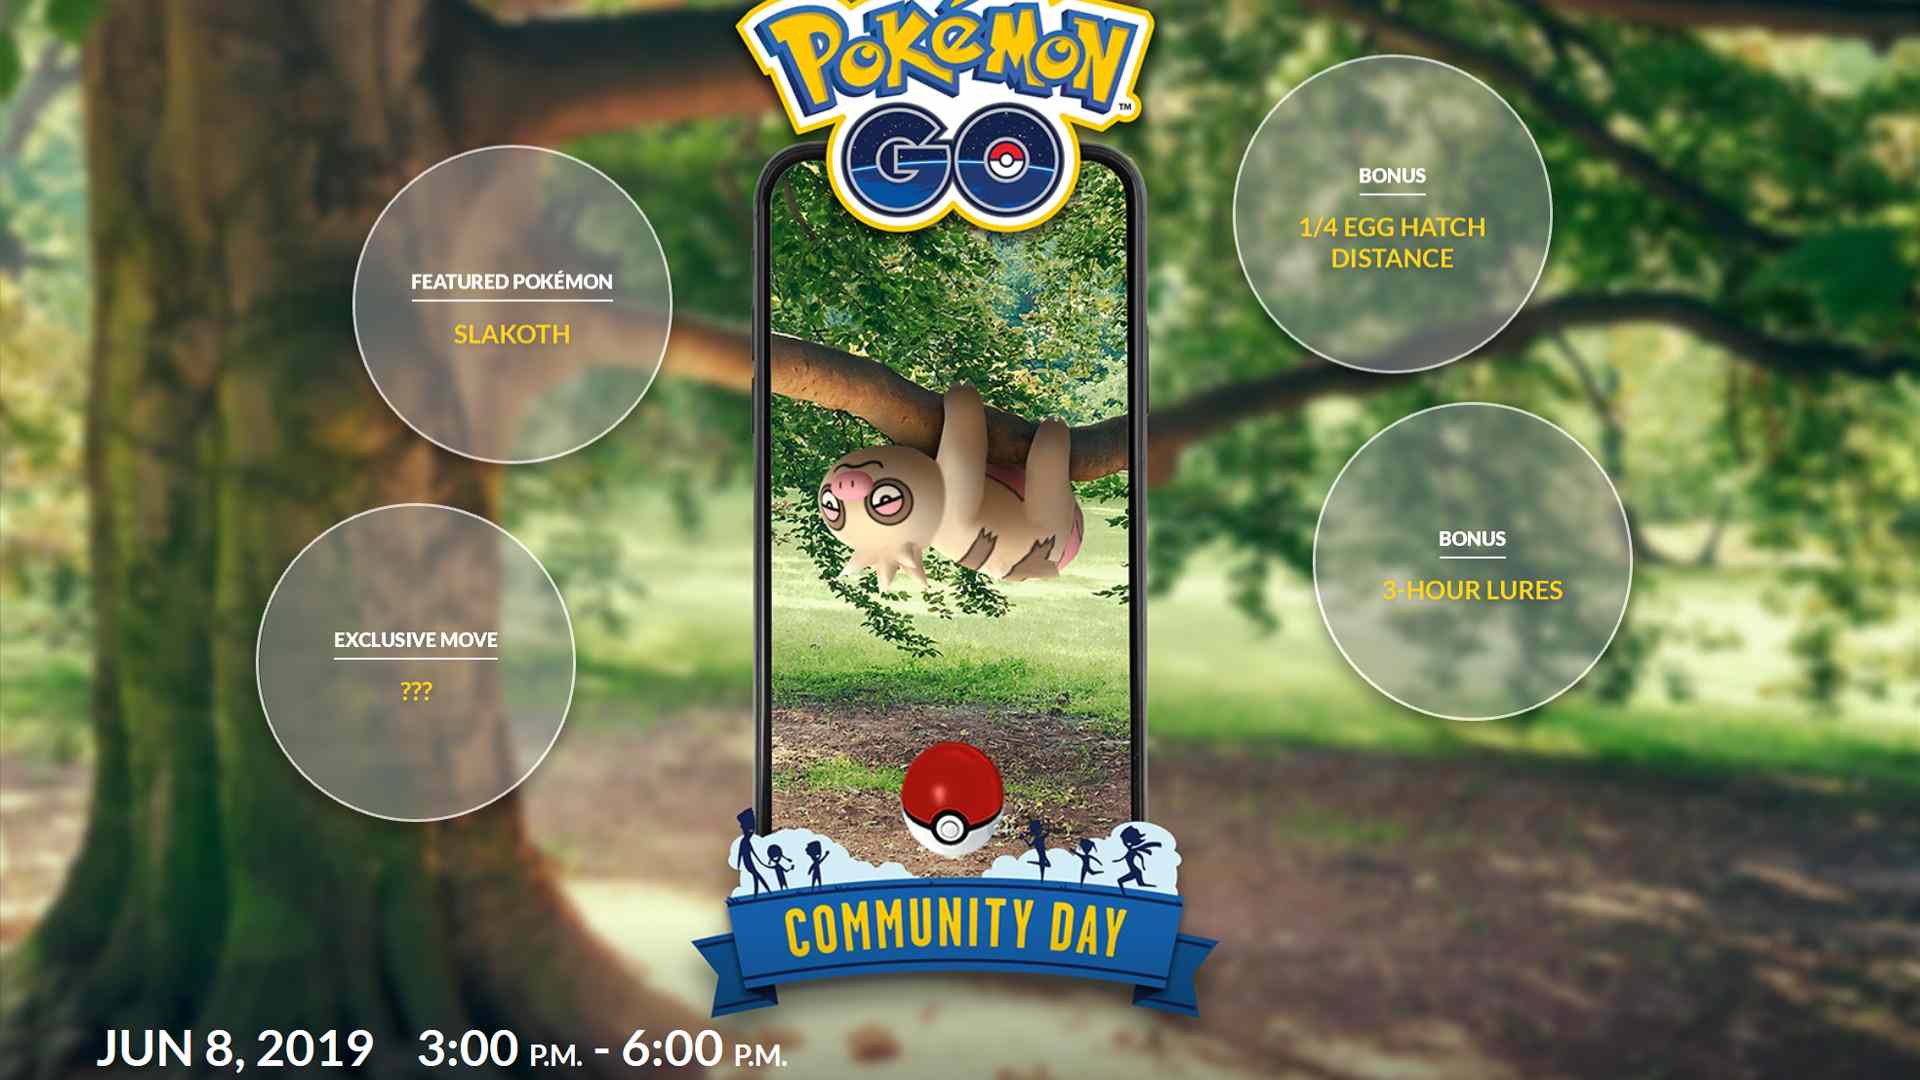 Podrobnosti o akci Pokemon Go Community Day.